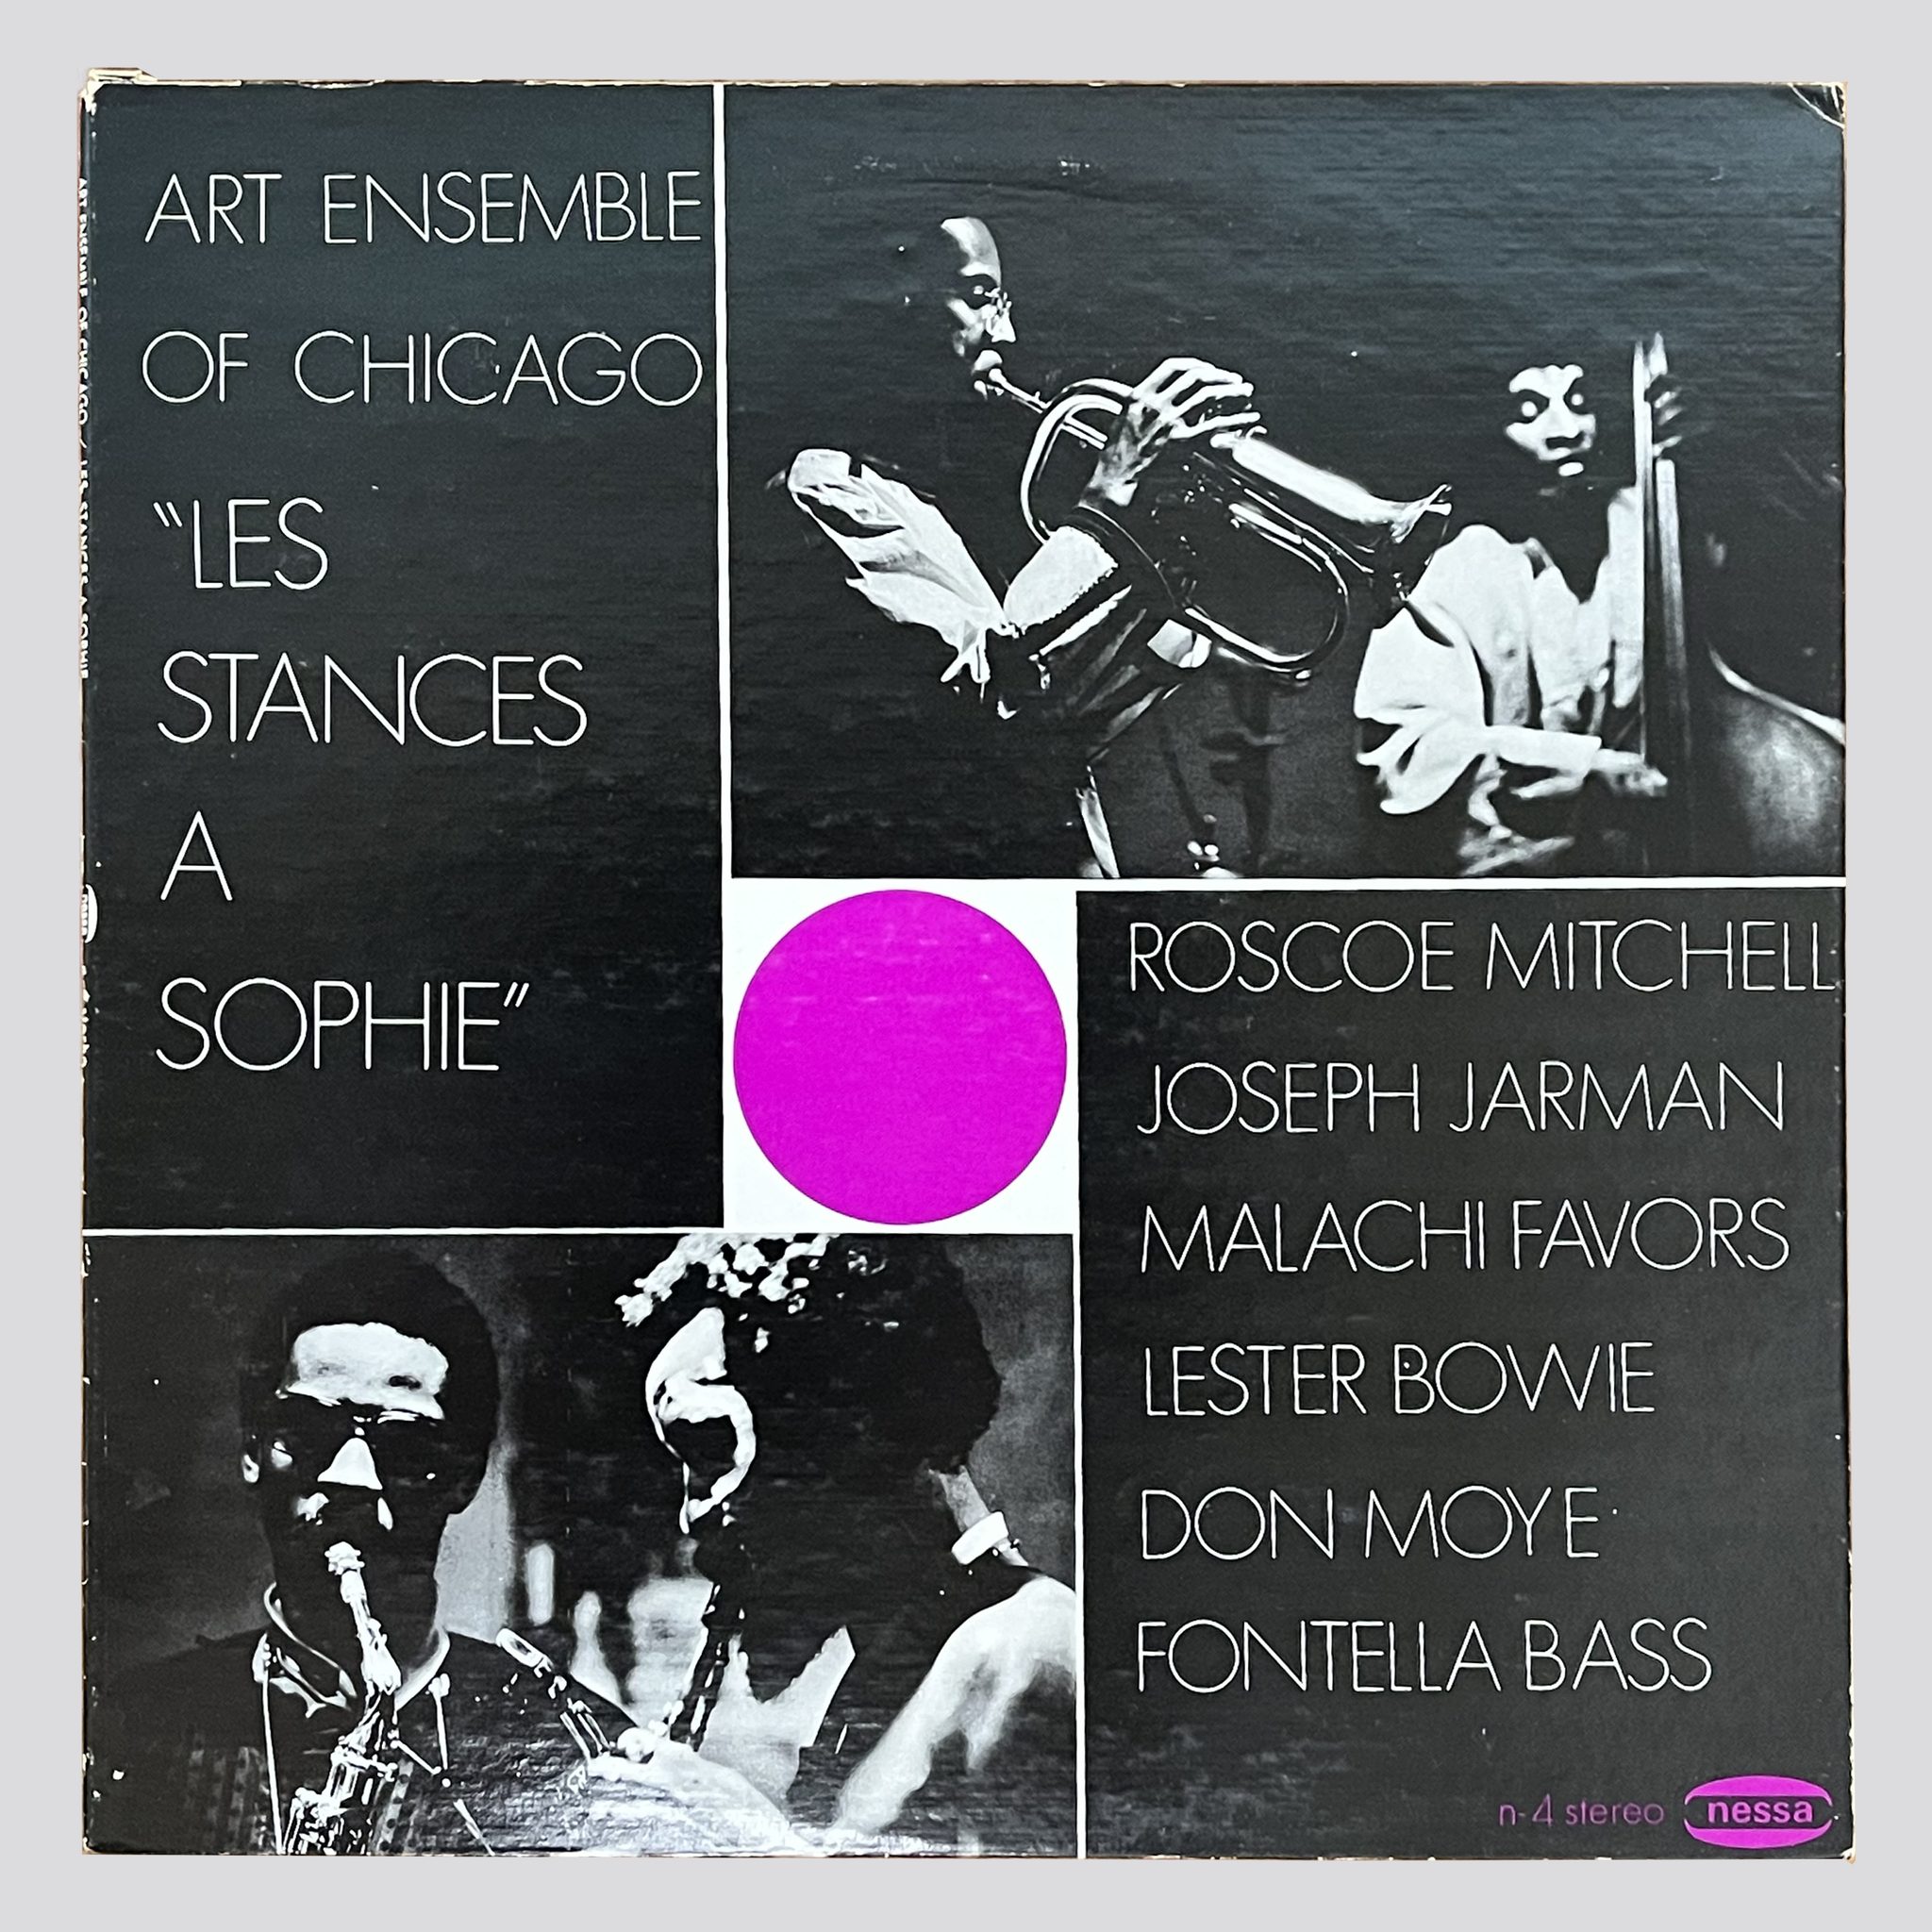 USED VINYL: ART ENSEMBLE OF CHICAGO - LES STANCES A SOPHIE LP